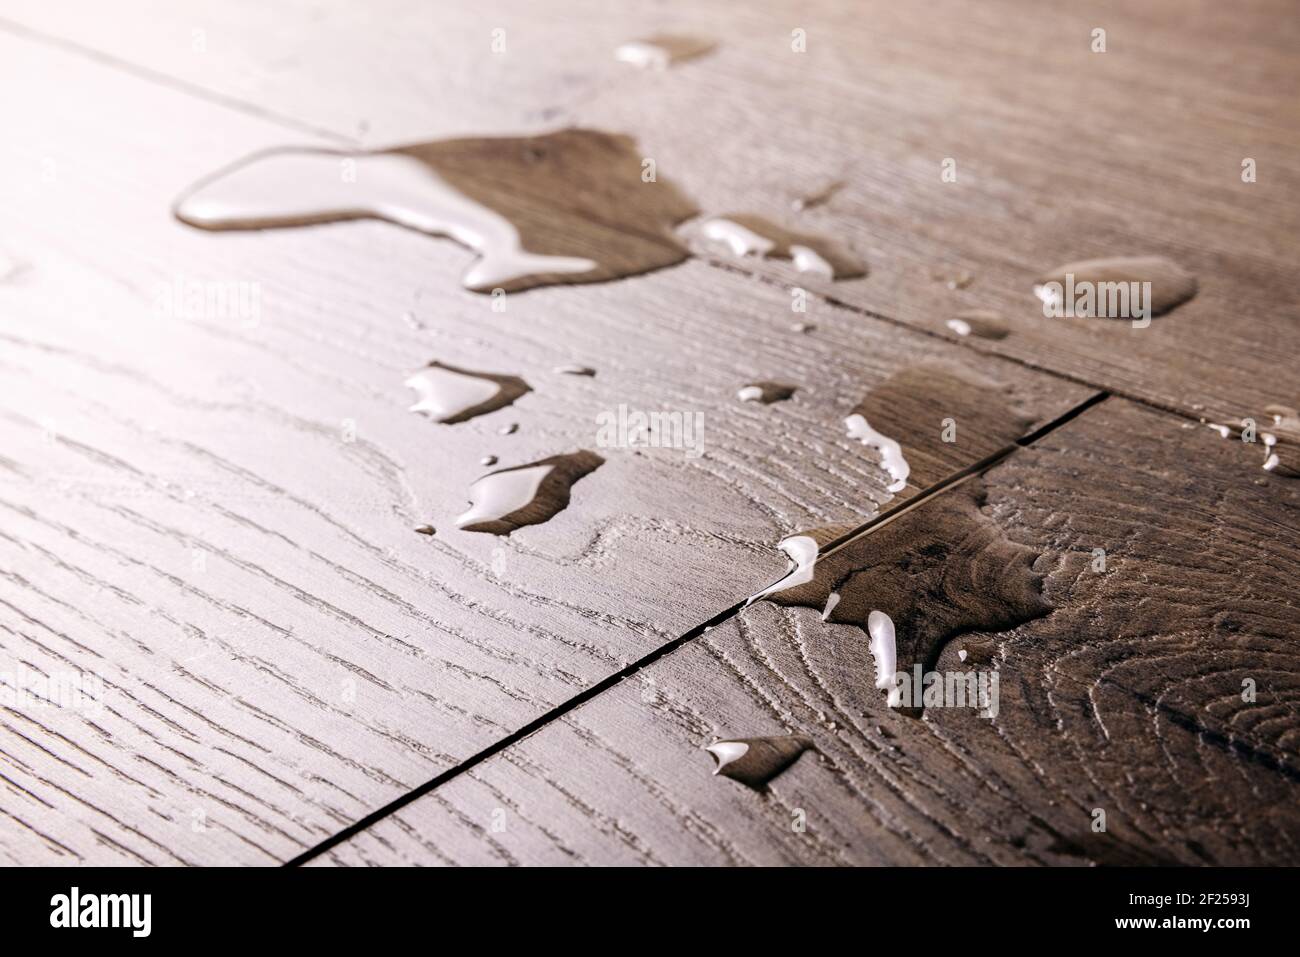 pavimento impermeabile - gocce d'acqua versate sul pavimento in laminato di legno Foto Stock